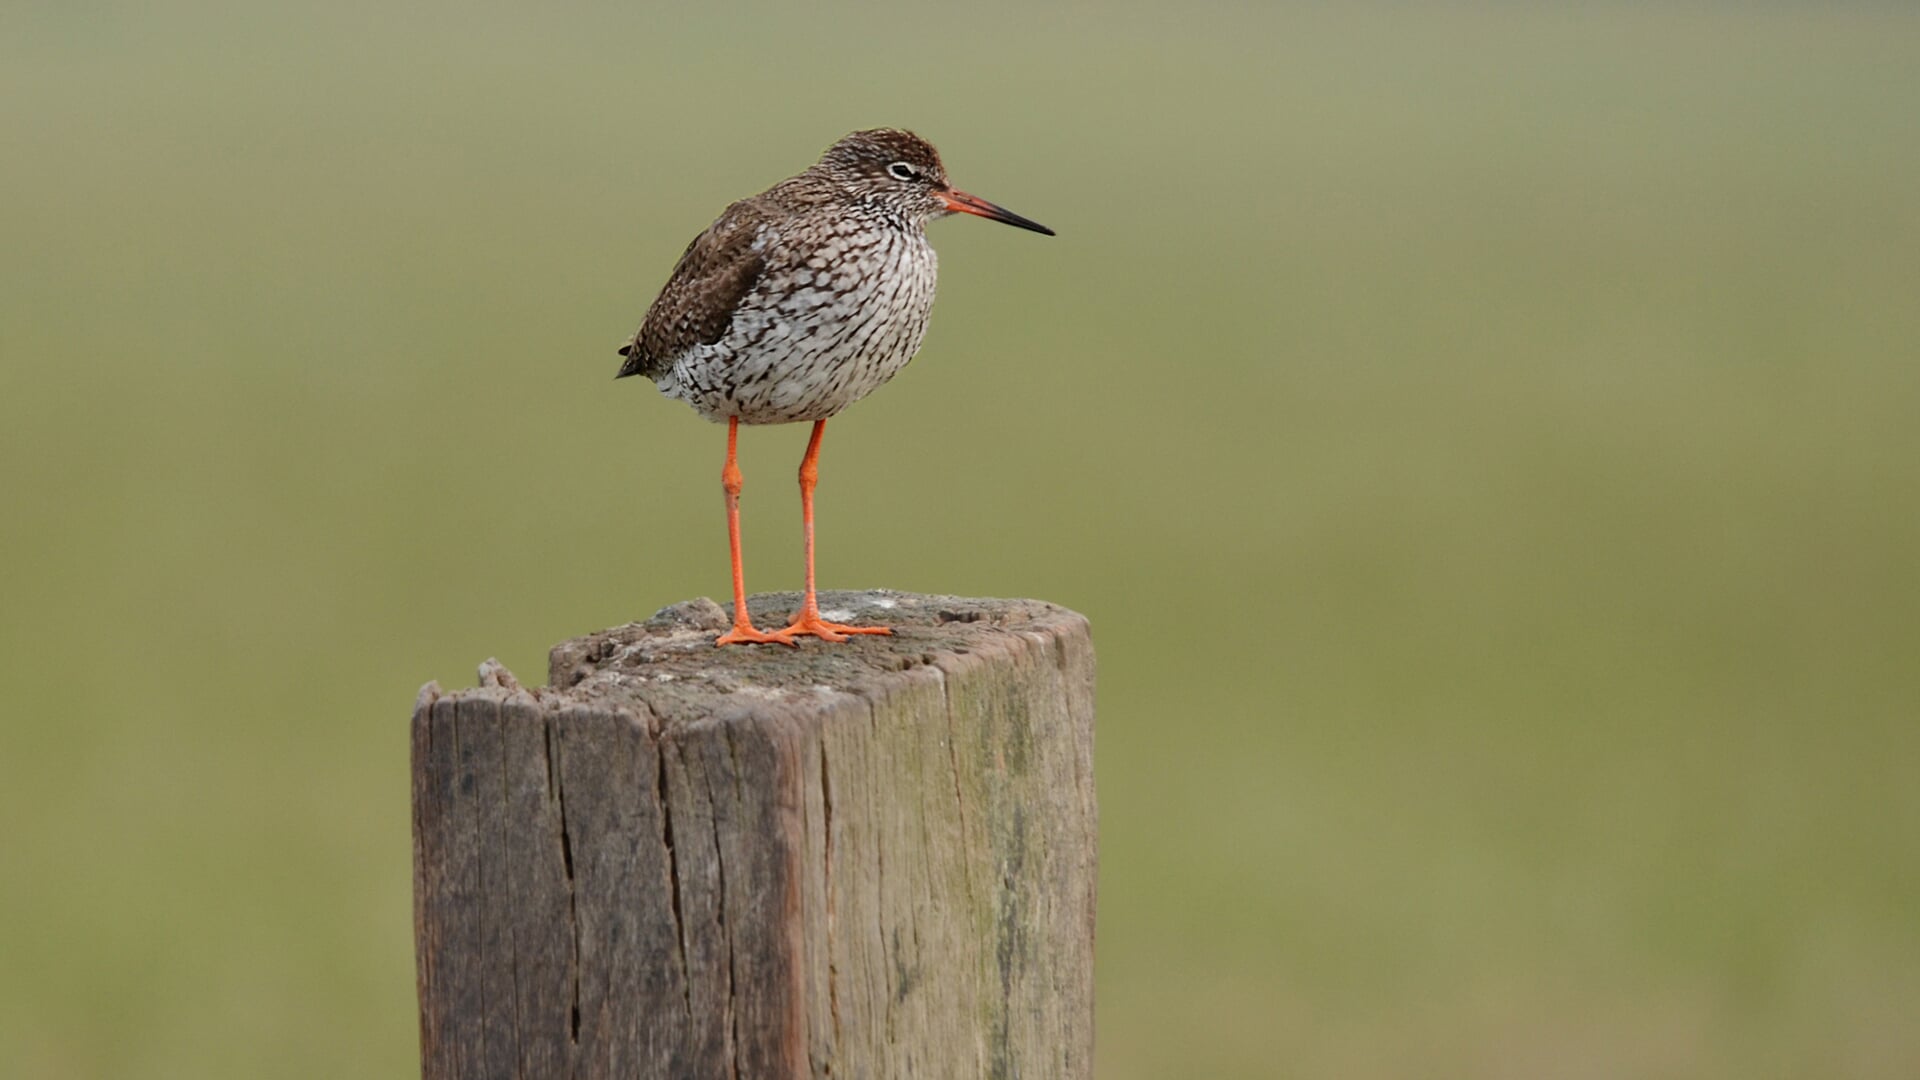 Vogels spotten tijdens de Nationale Vogelweek.